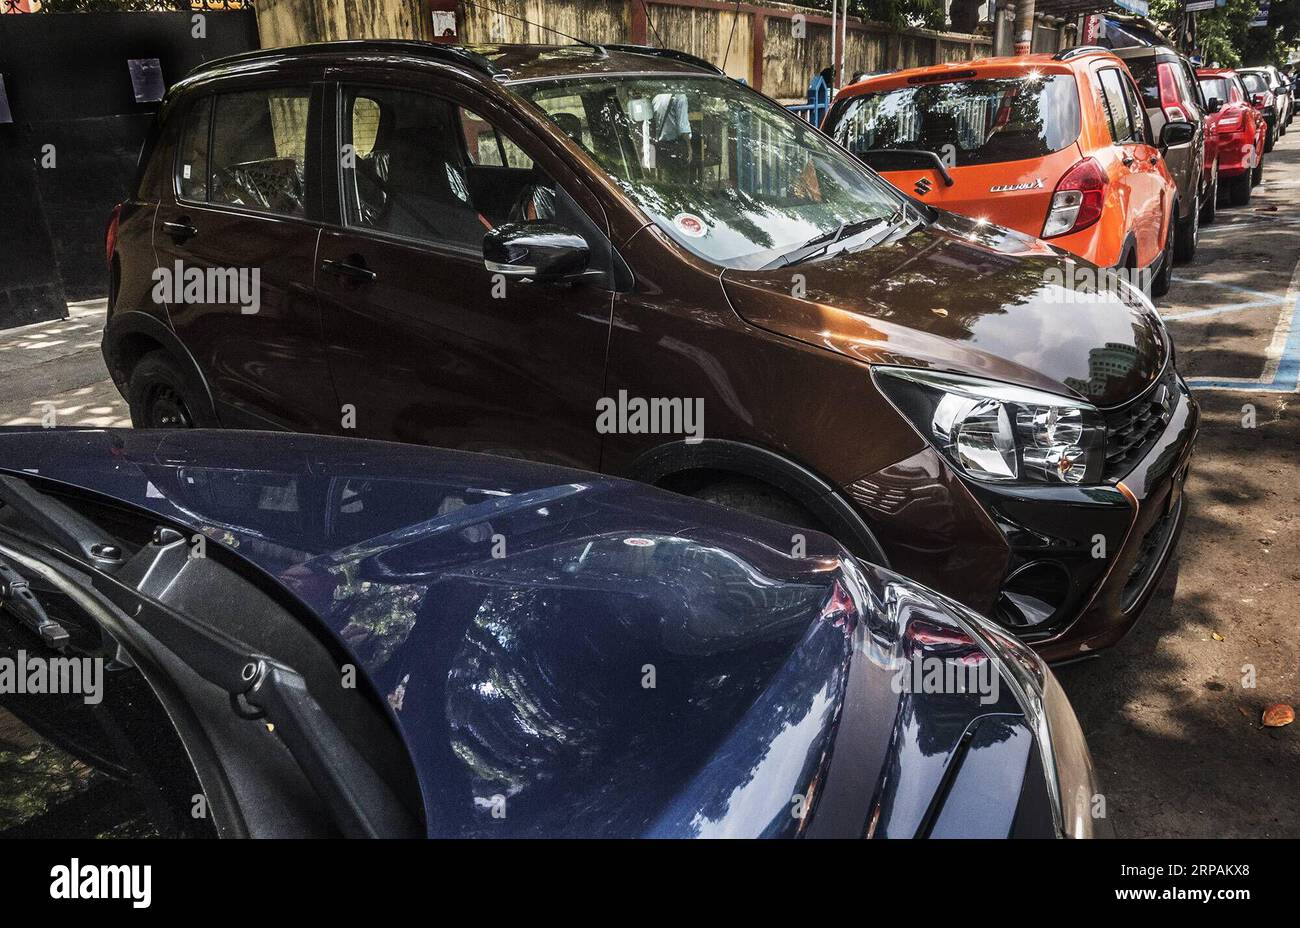 (190514) -- CALCUTTA, 14 maggio 2019 (Xinhua) -- le auto nuove sono viste fuori da uno showroom a Calcutta, India, 14 maggio 2019. Il settore automobilistico indiano ha continuato la sua corsa irregolare per il quinto mese consecutivo ad aprile, con un calo del 20% delle vendite di auto e del 16% delle vendite di due ruote, rispetto allo stesso periodo dell'anno scorso. Il drastico calo delle vendite è stato attribuito a diversi fattori, tra cui la compressione della liquidità sul mercato, l'aumento del costo del carburante, i tassi di interesse e i costi assicurativi, che hanno attenuato il sentimento dei consumatori. (Xinhua/Tumpa Mondal) INDIA-KOLKATA-VEHICLES SALES DIP PUBLICATIONxNOTxINxCHN Foto Stock